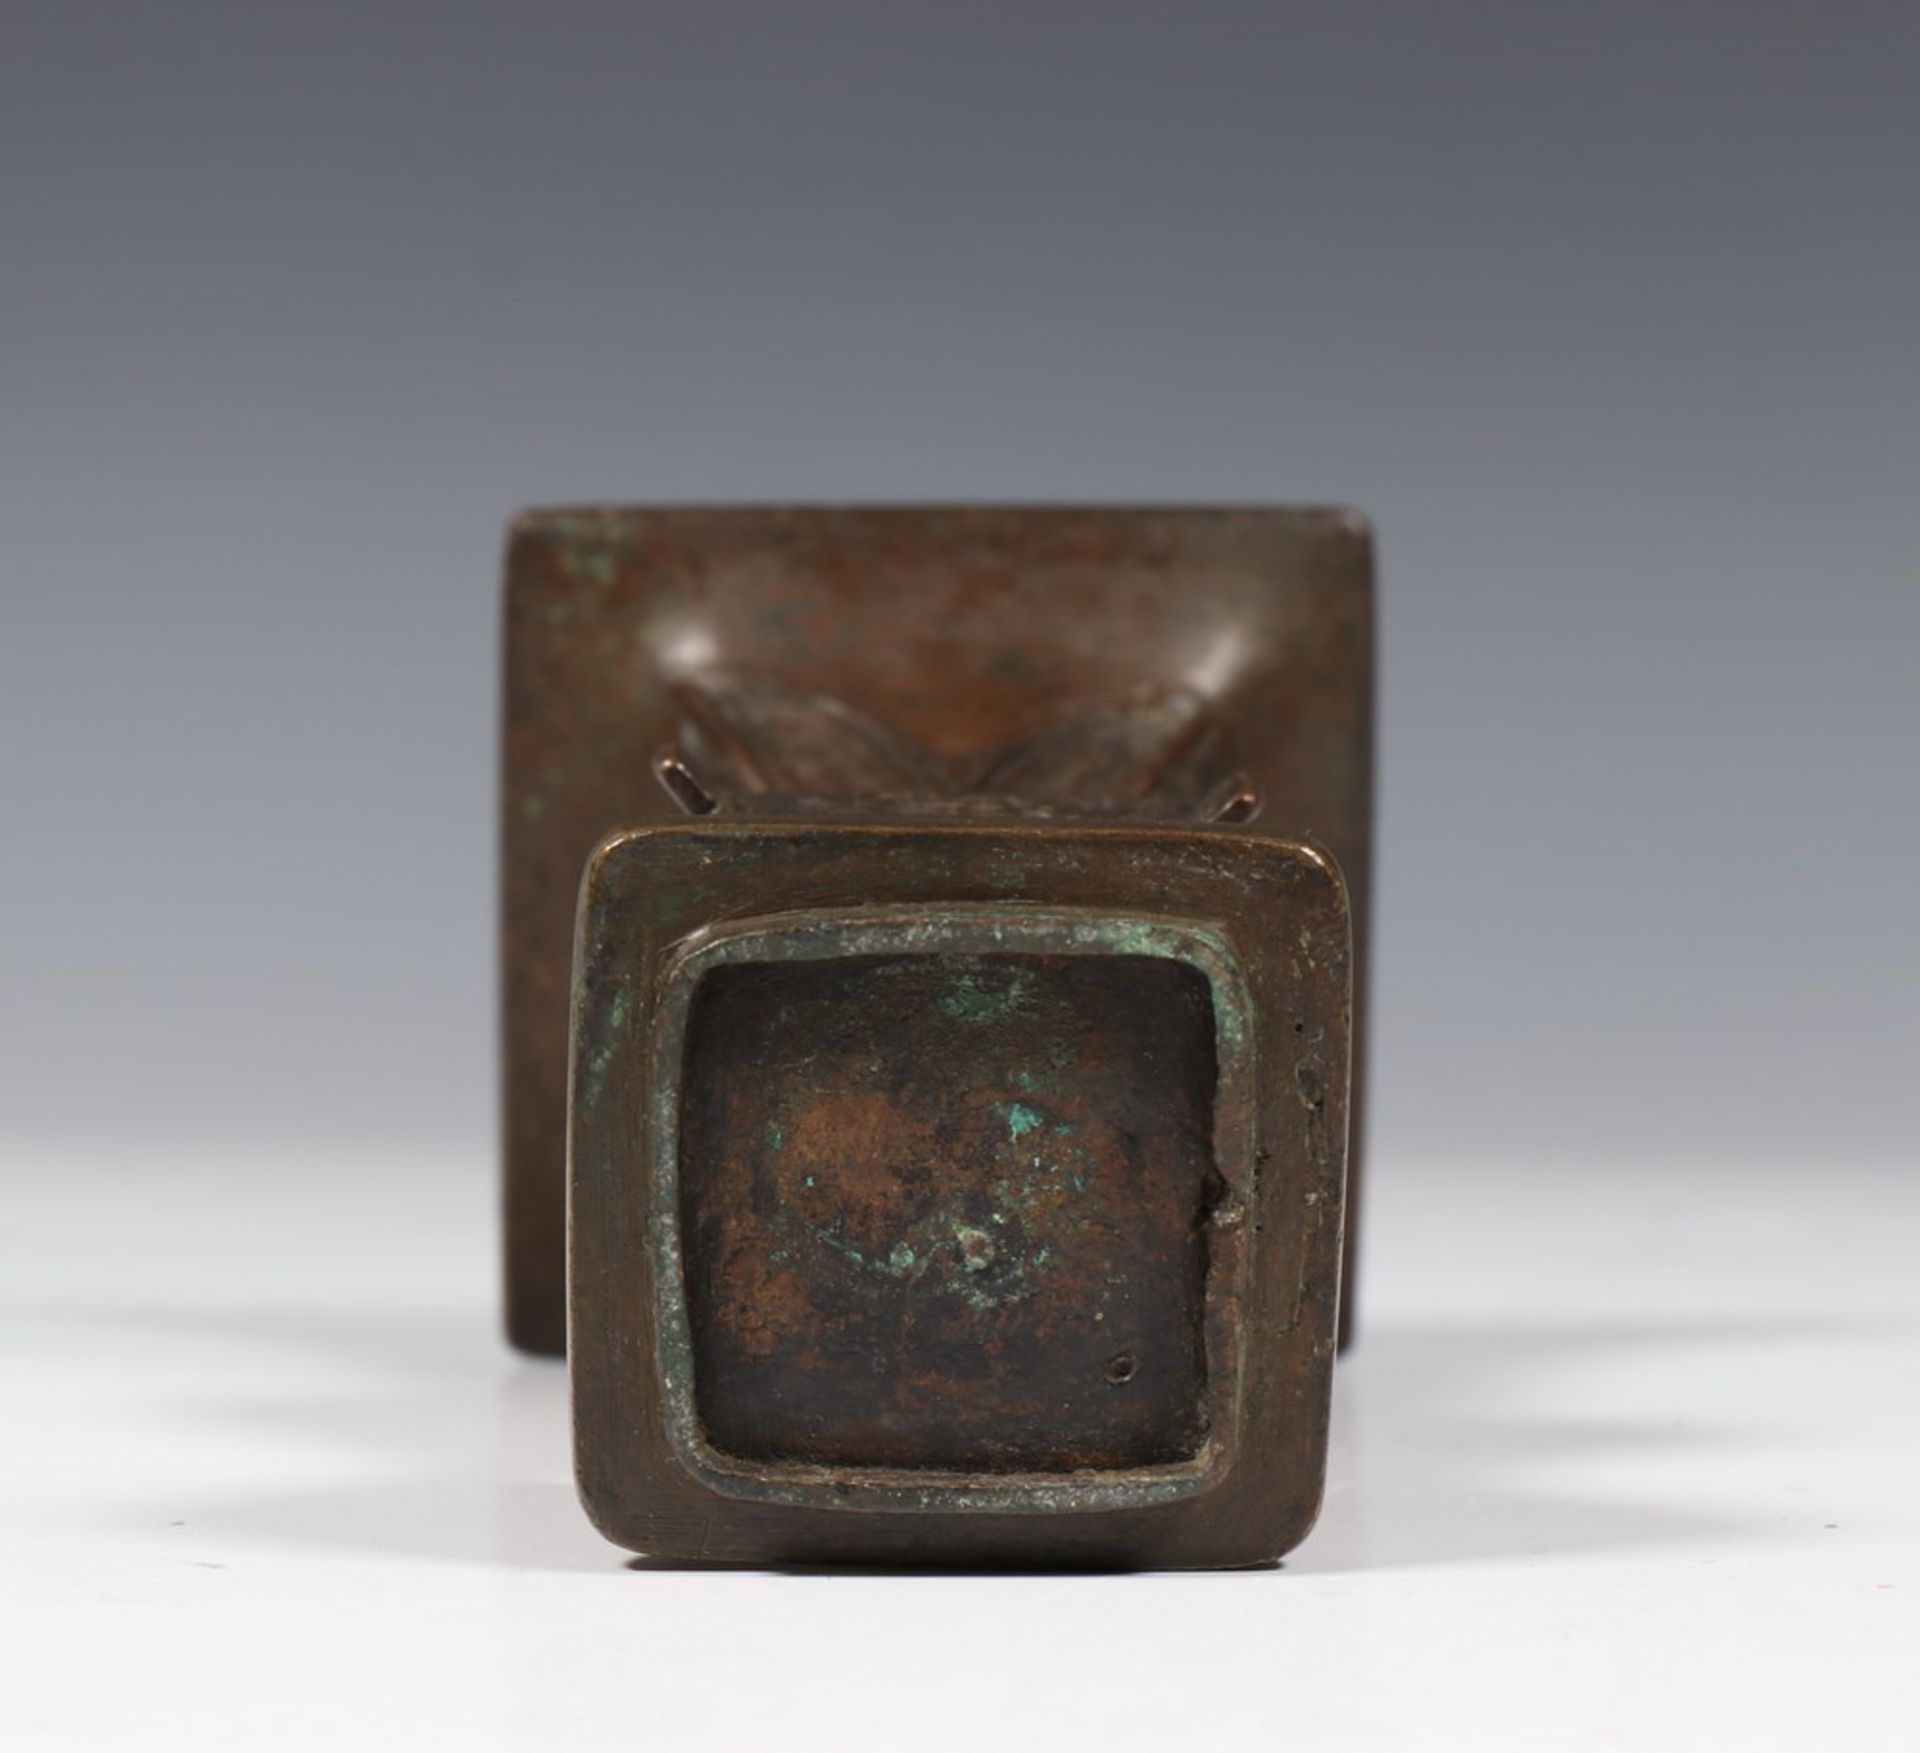 China, kleine bronzen vierkante 'fang-gu' vaas, laat Ming dynastie, 17e eeuw,met archaische motieven - Bild 3 aus 3